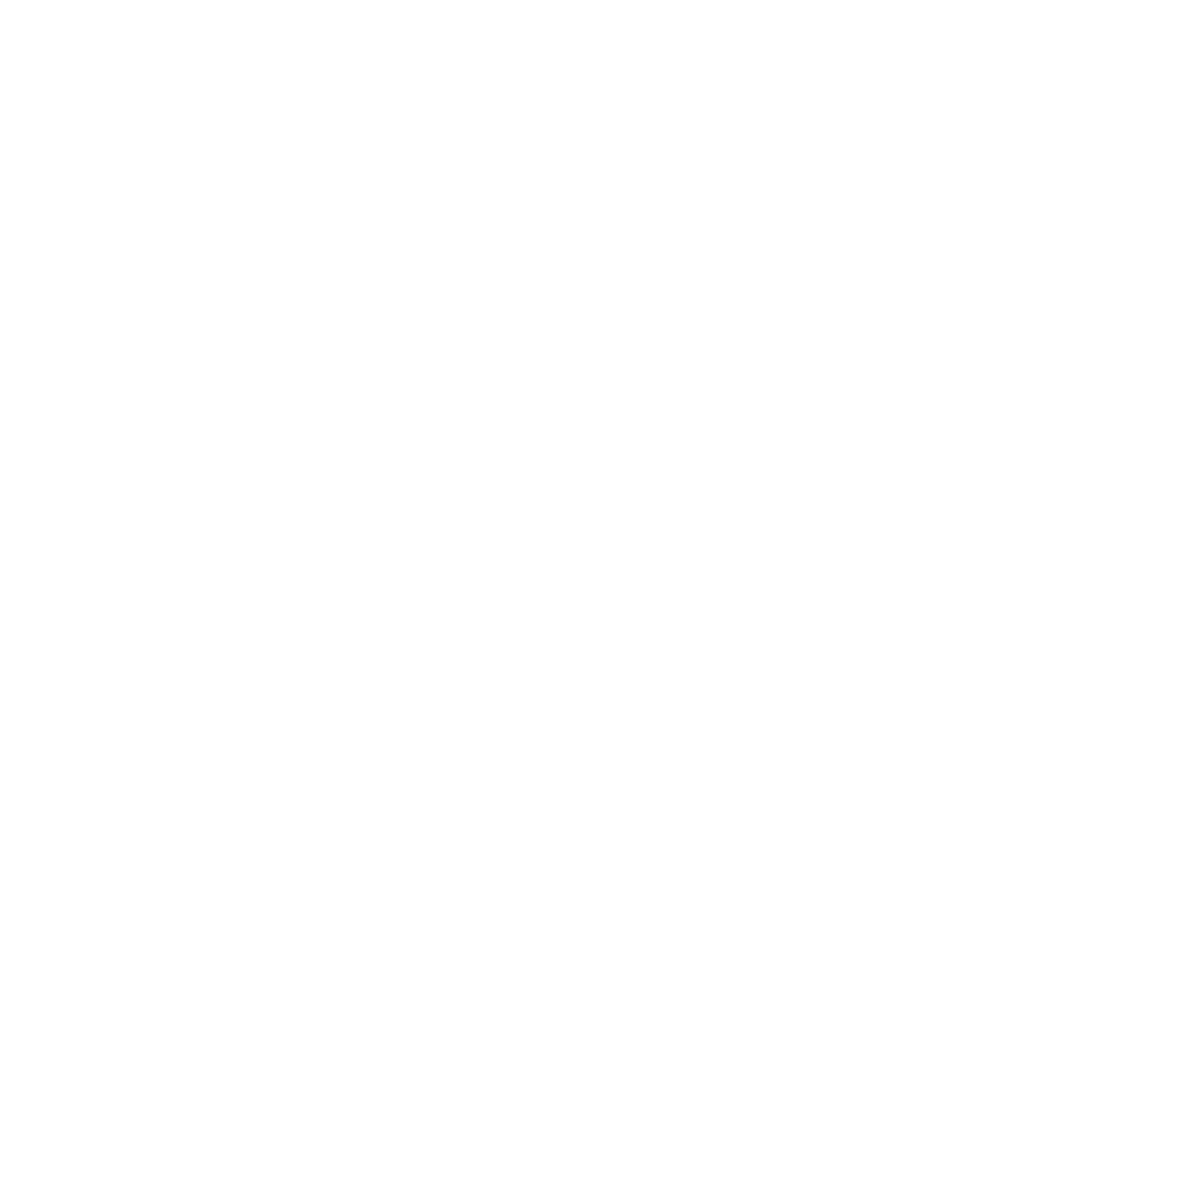 Restaurant Brenner Logo - Case Study